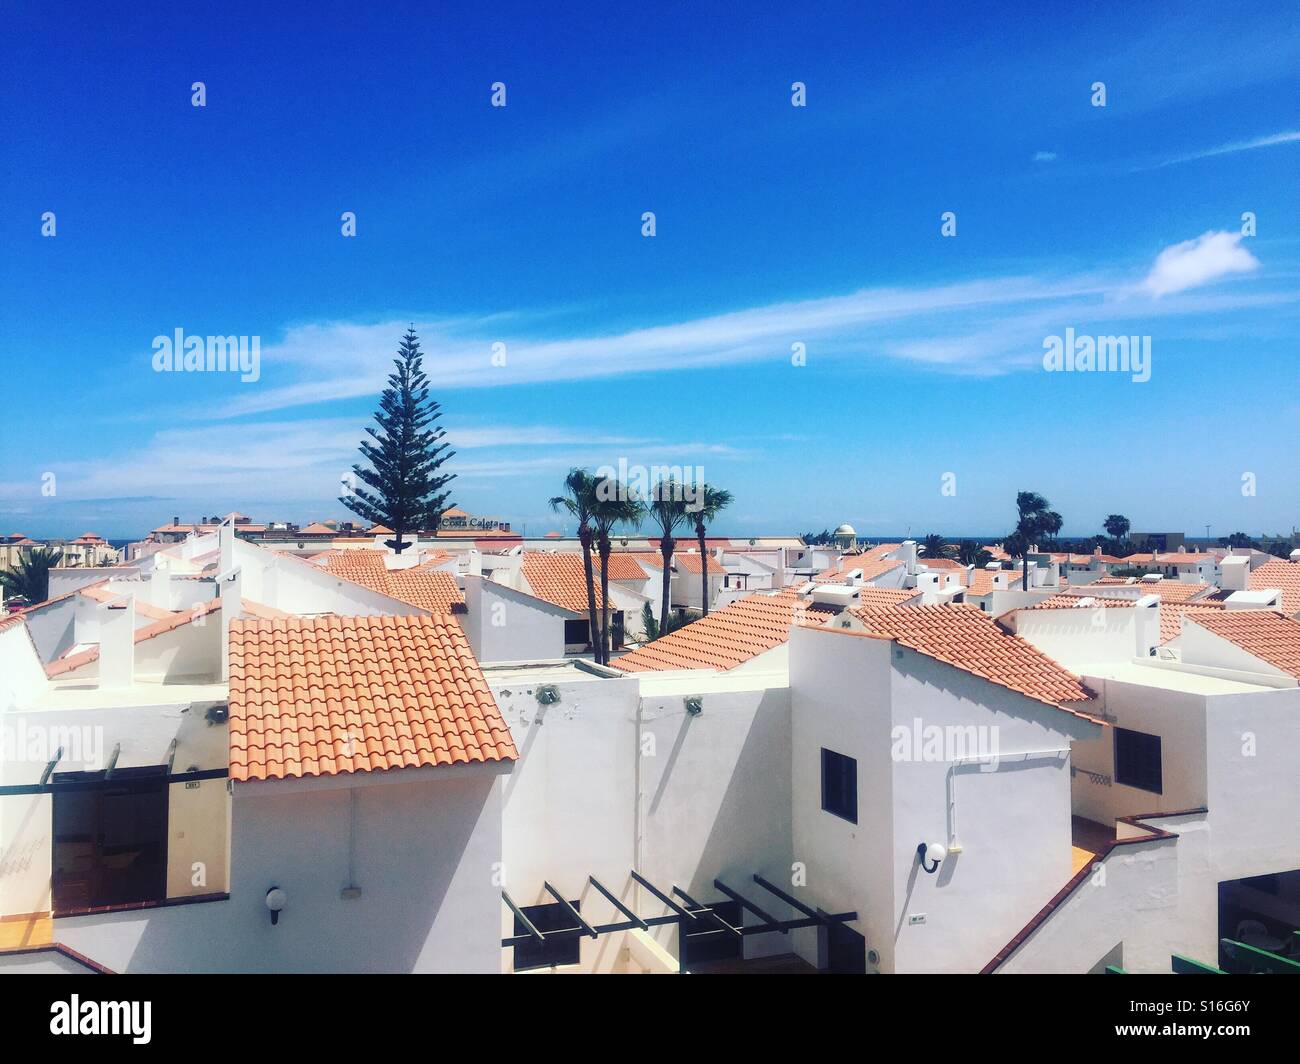 View of Caleta de Fuste from hotel roof, Fuerteventura. Stock Photo